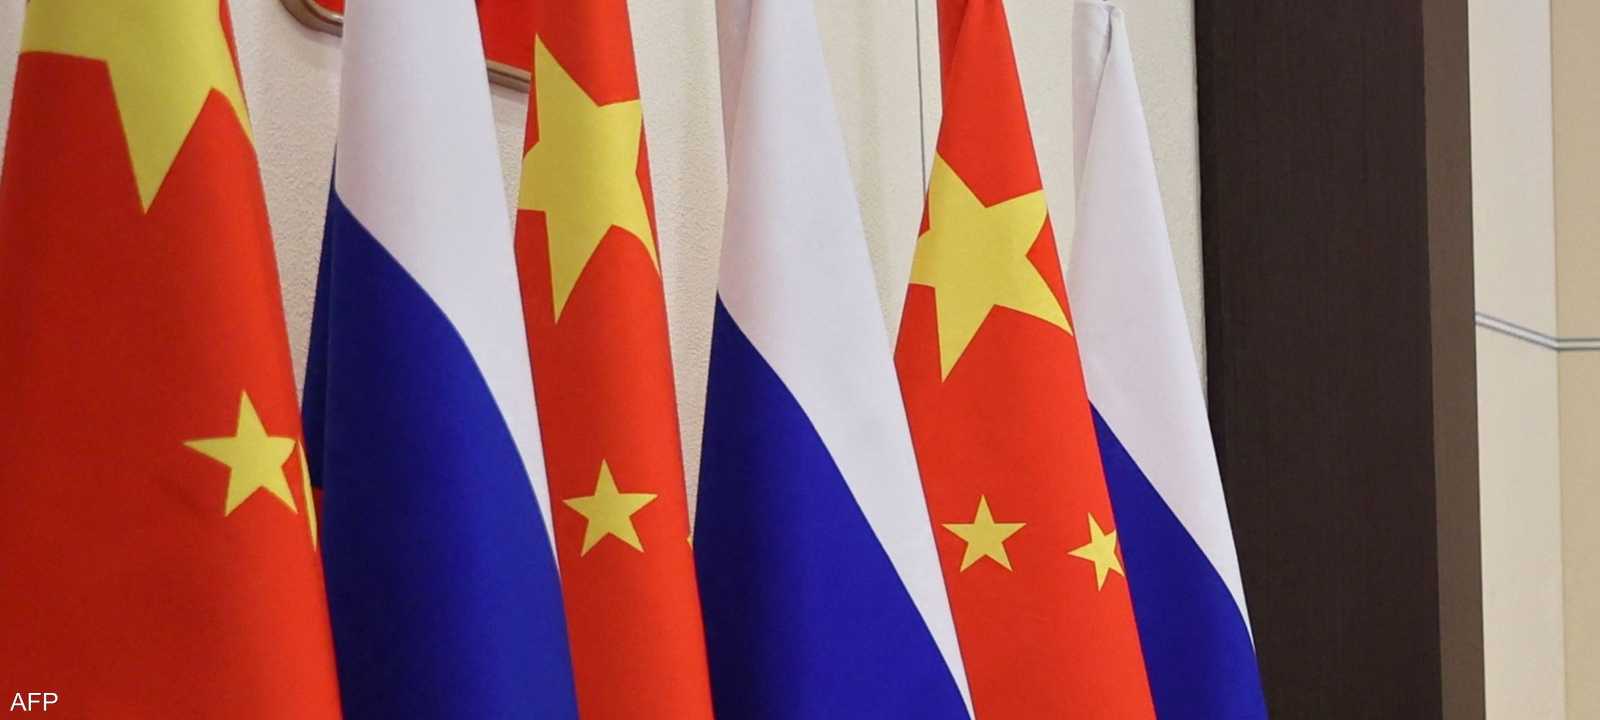 روسيا والصين أعلنتا عن "شراكة بلا حدود" في فبراير الماضي